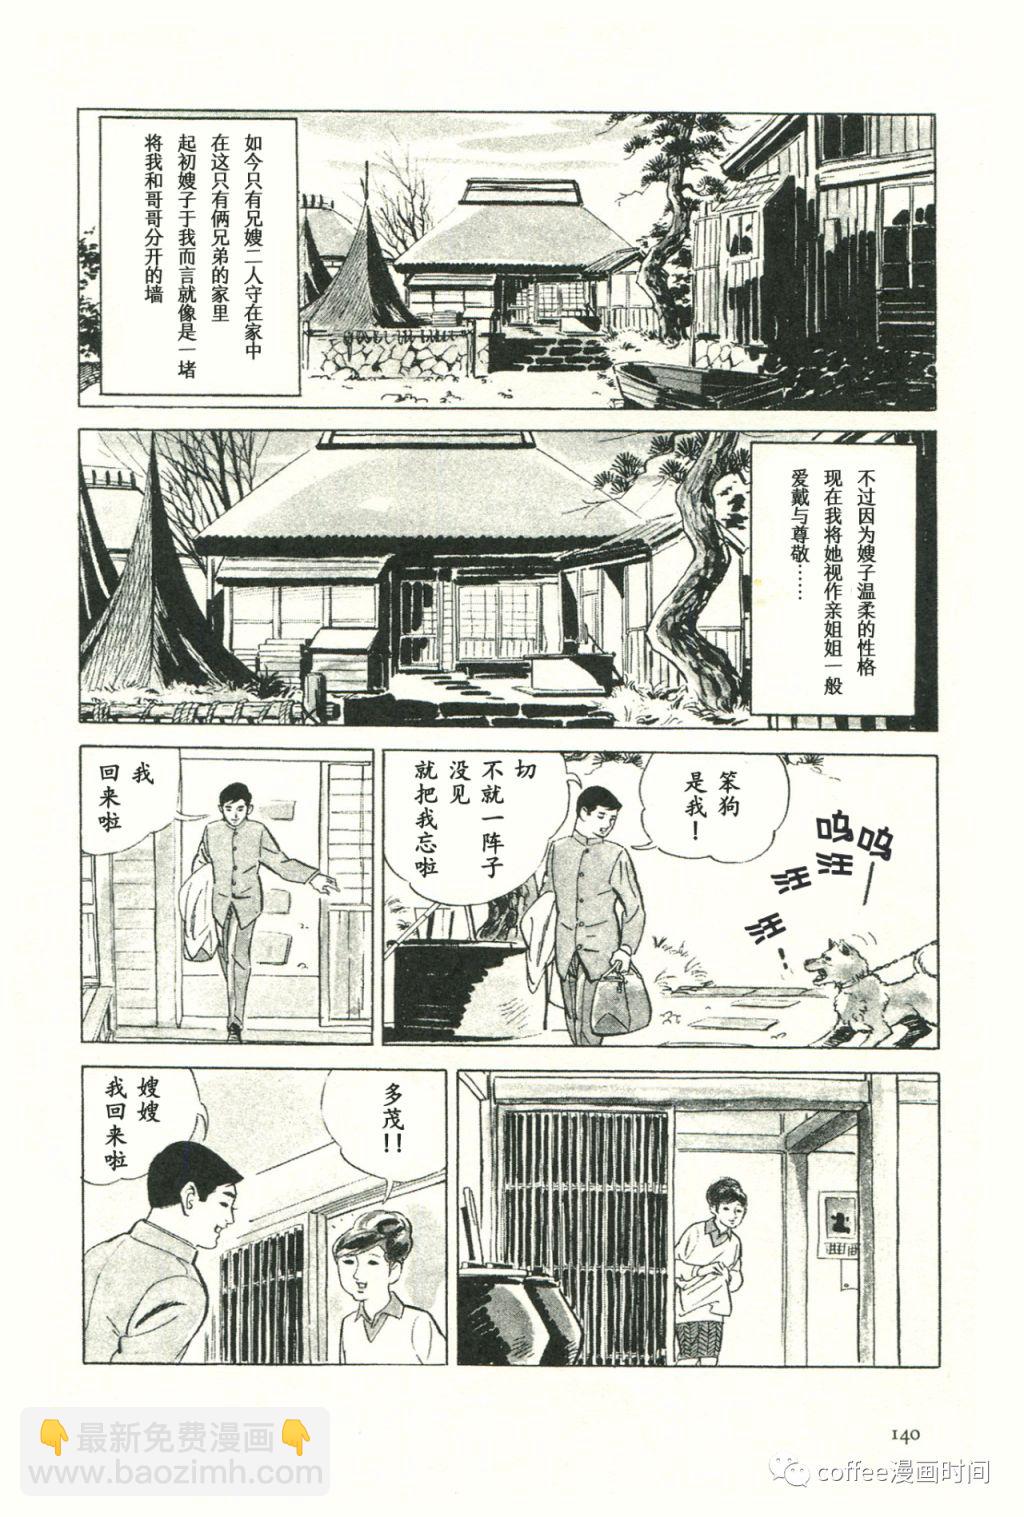 日本短篇漫畫傑作集 - 齋藤隆夫《純白的夕陽》 - 1